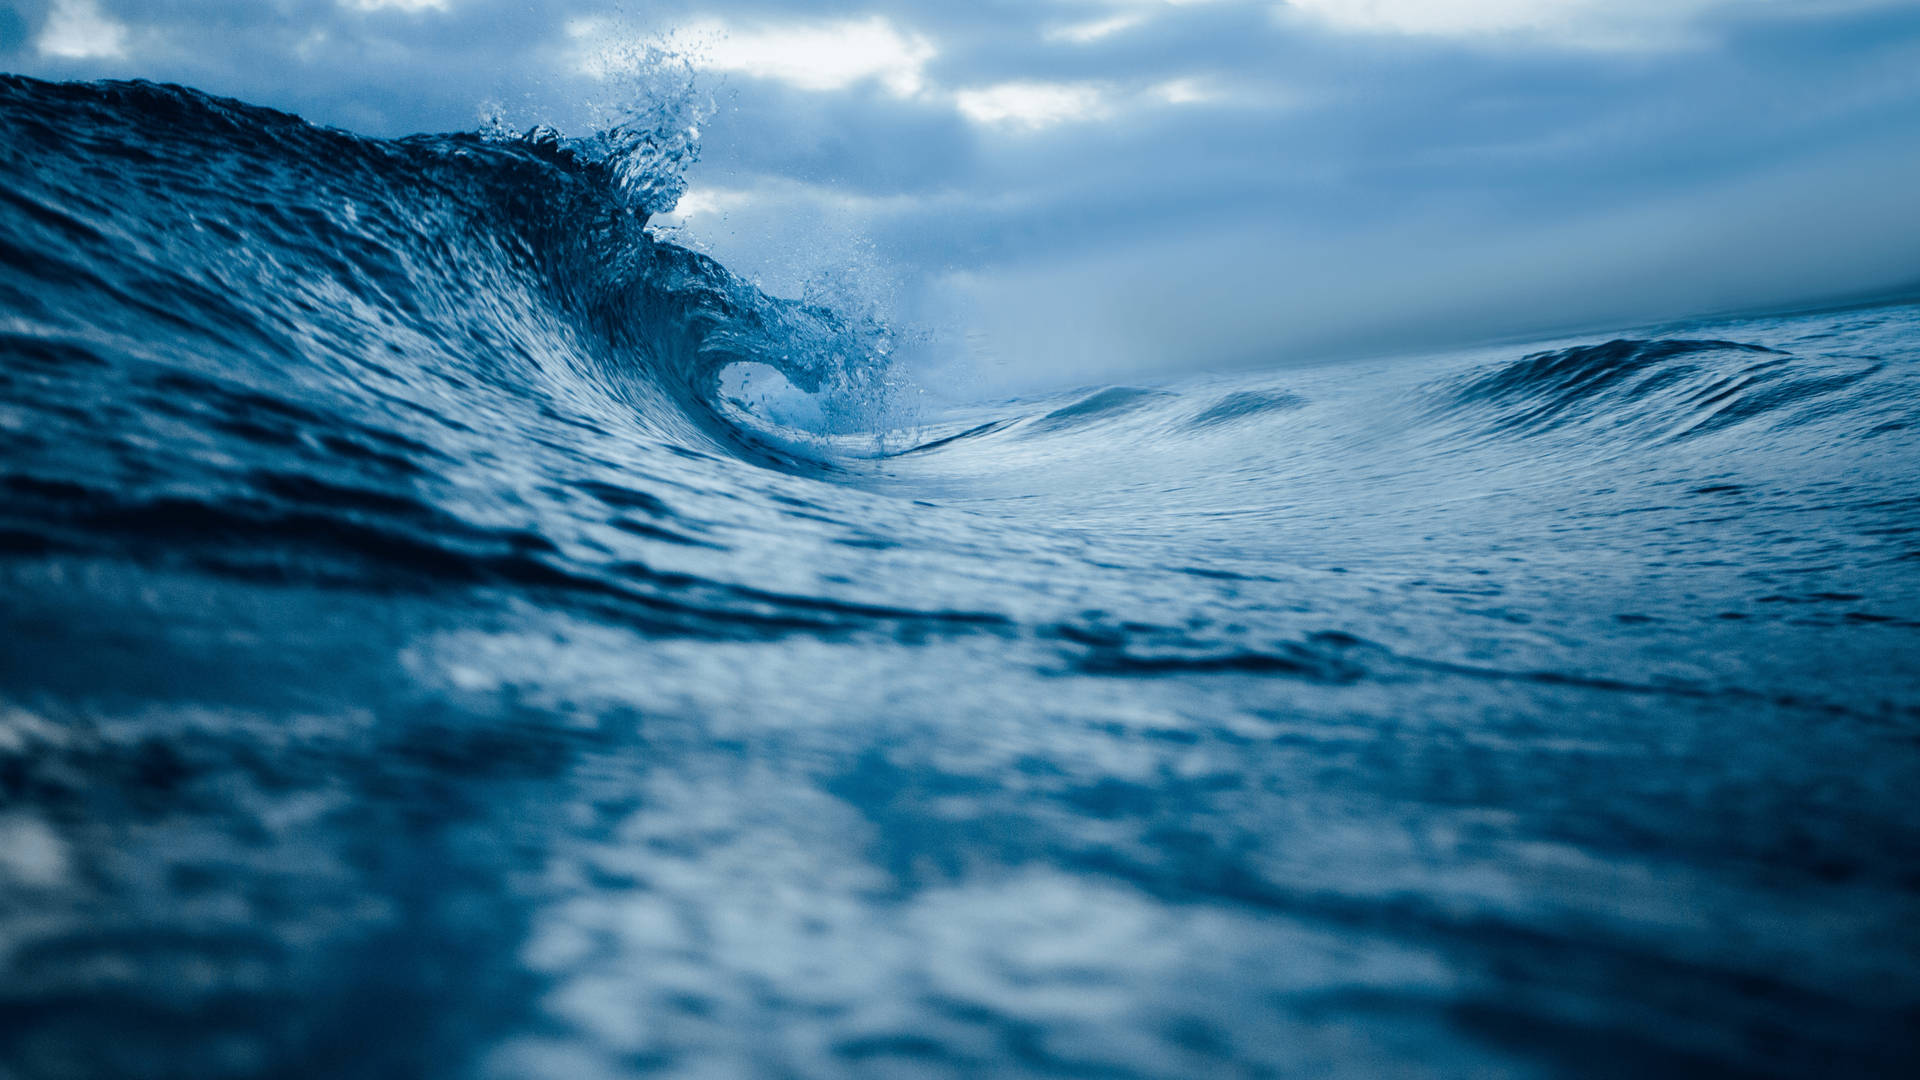 Moody Aesthetic Ocean Waves Background